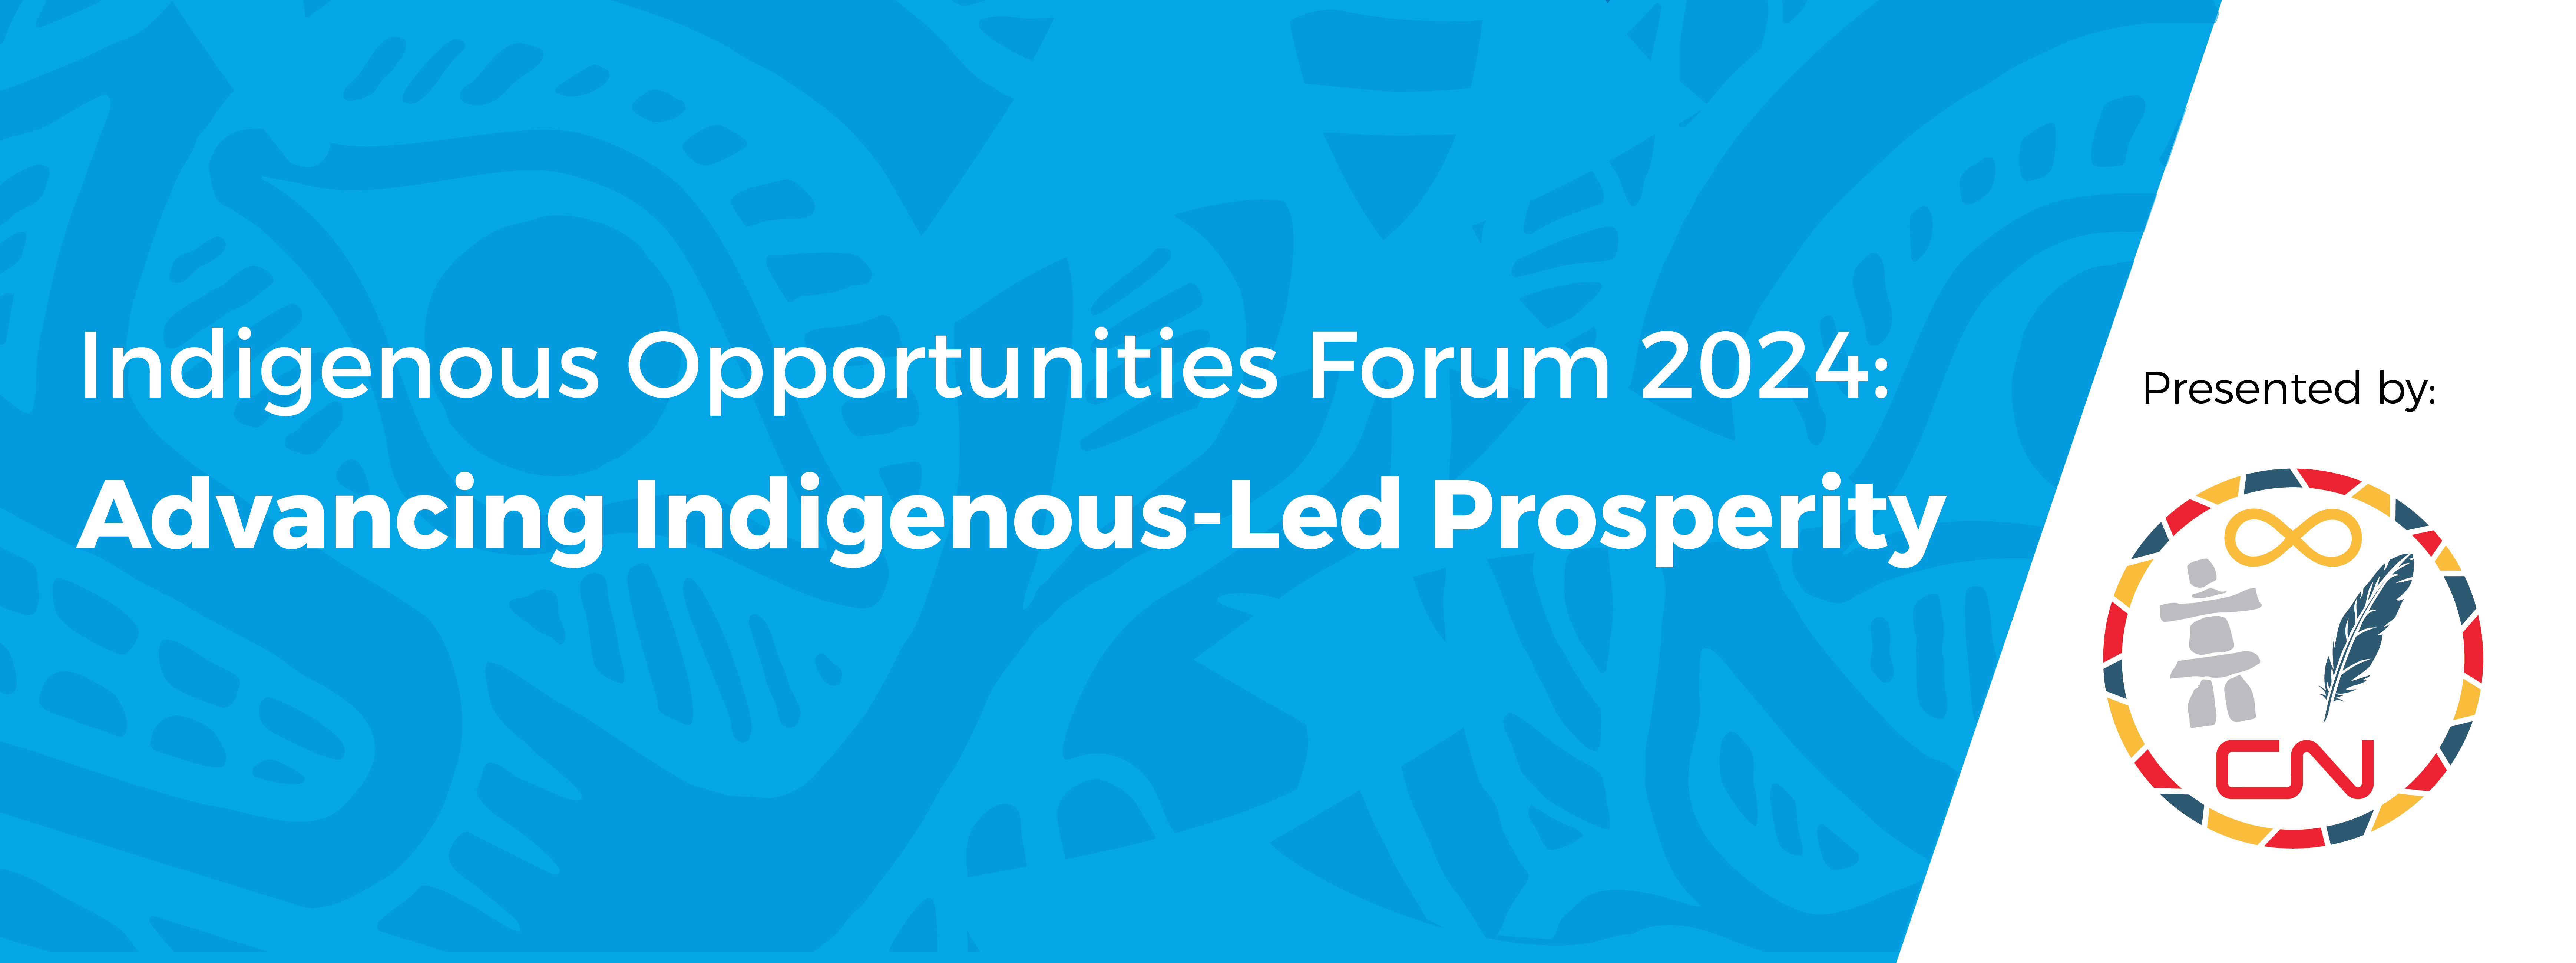 Indigenous Opportunities Forum 2024